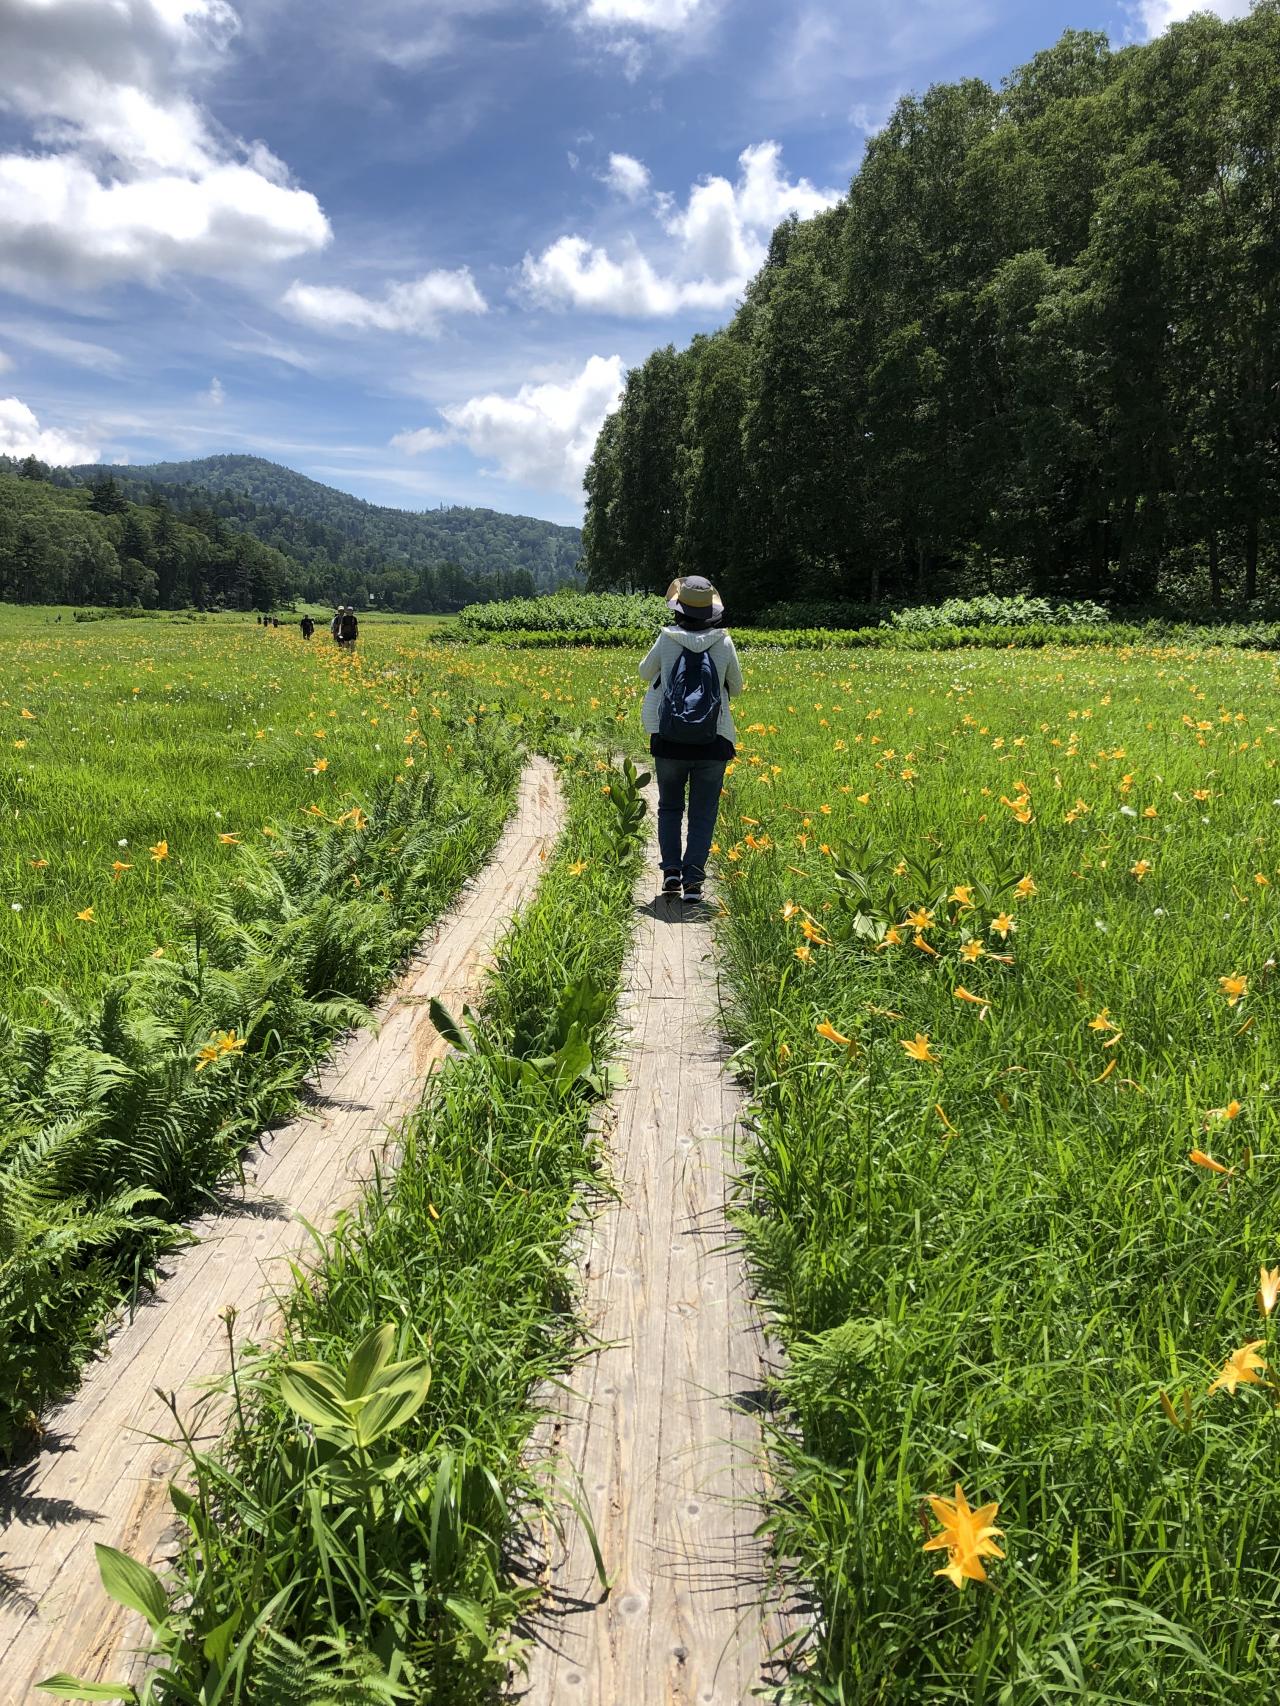 妻と一緒に尾瀬を歩く 大江湿原 みんなの写真館 ヤマケイオンライン Yamakei Online 山と溪谷社